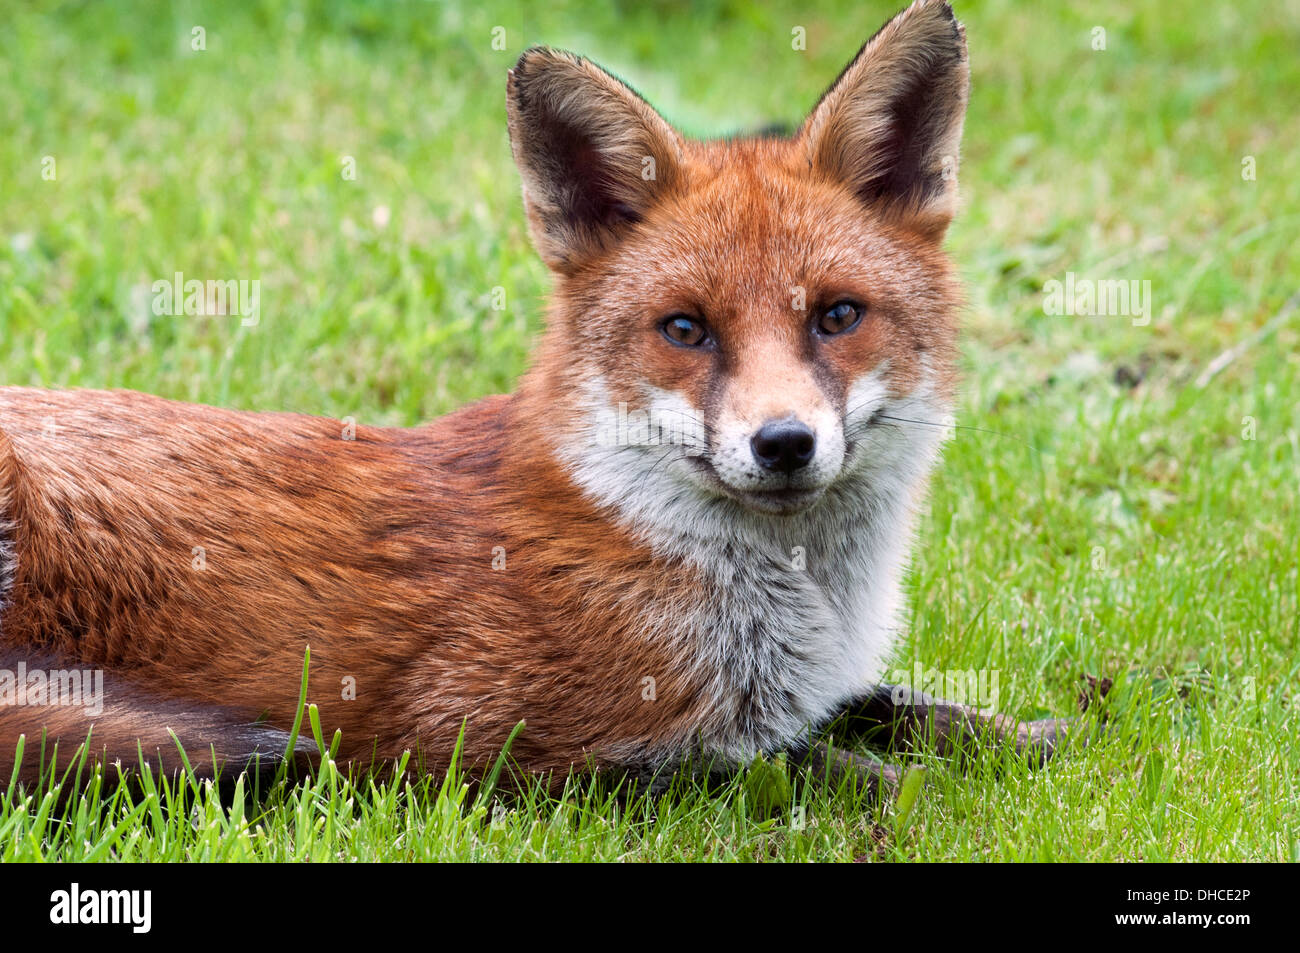 Le renard roux (Vulpes vulpes) sur une pelouse dans un jardin urbain (cour). Droylsden, Tameside, Manchester, Angleterre, RU Banque D'Images